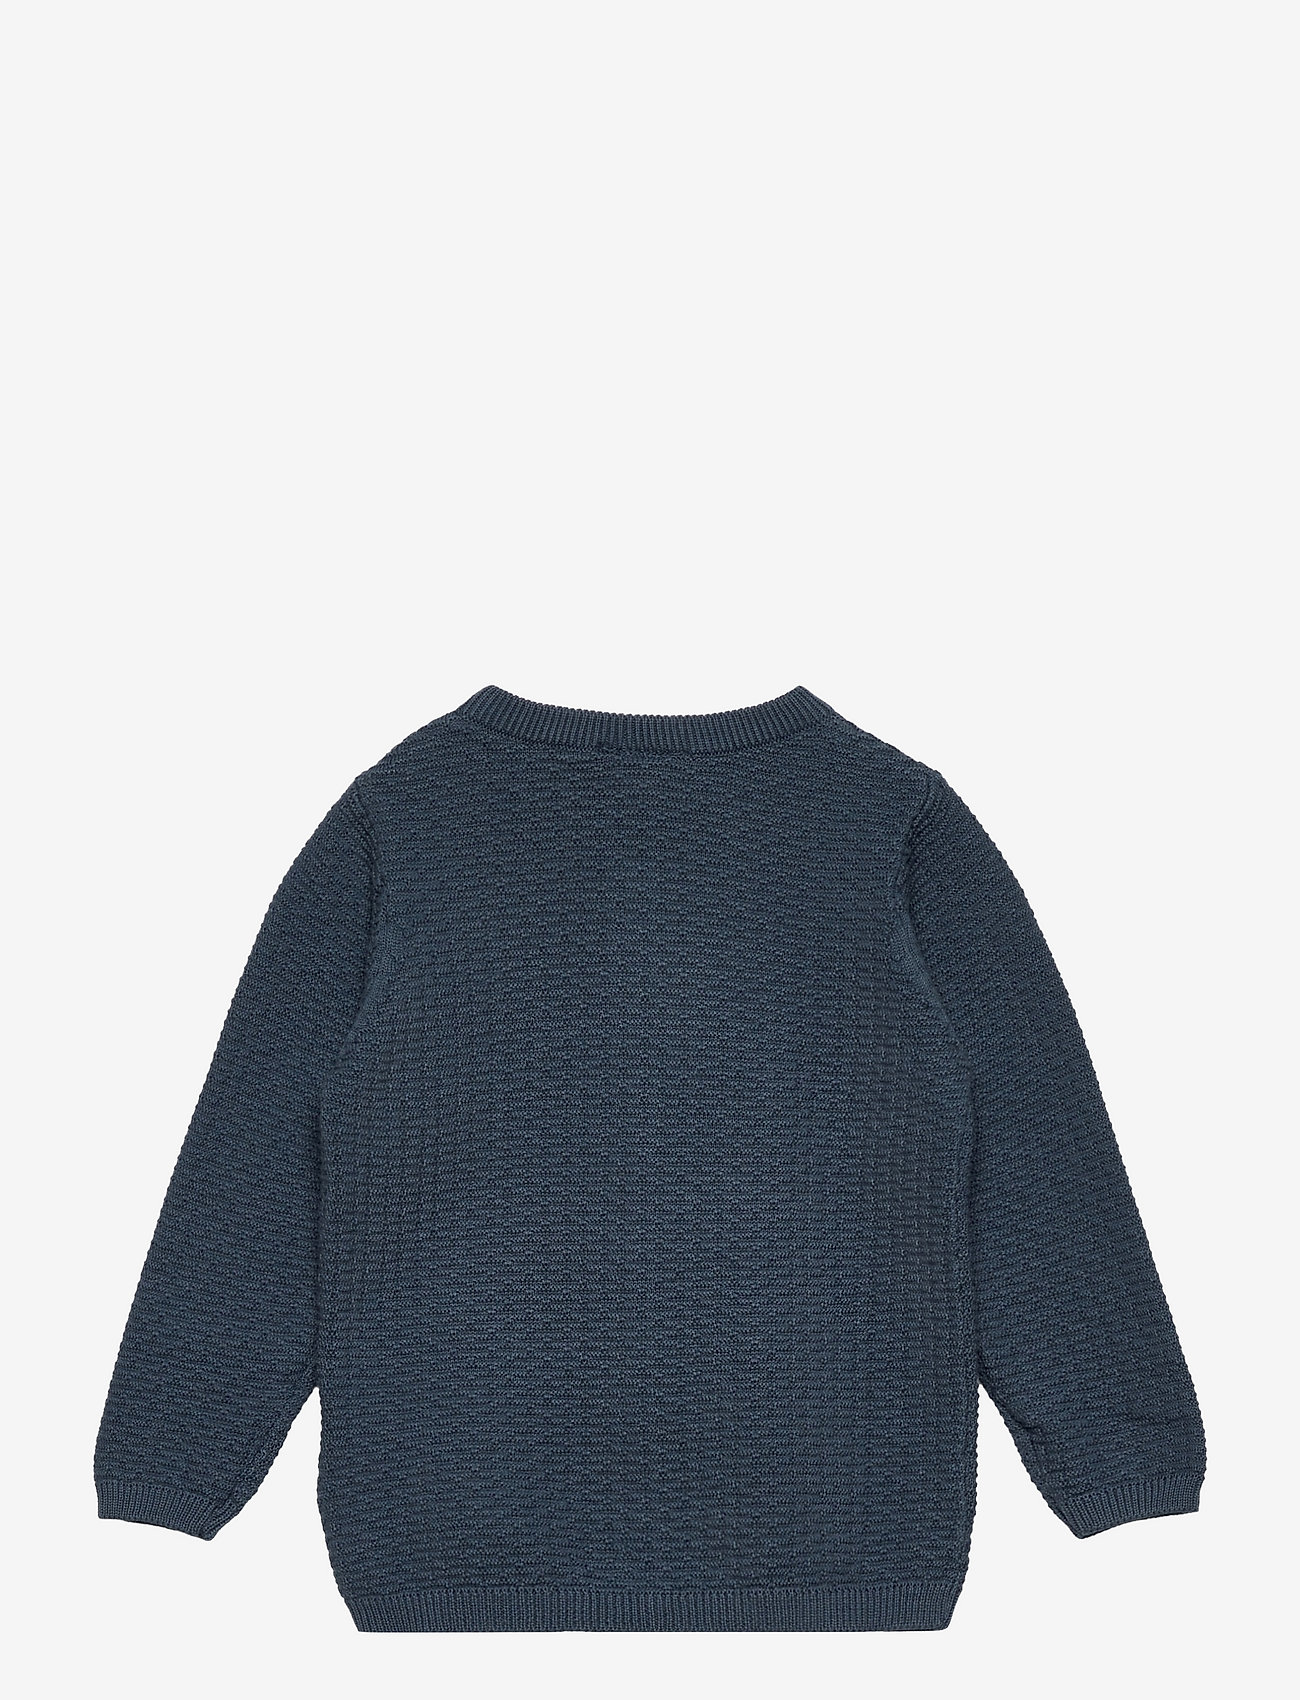 Fixoni - Knitted Cardigan - neuletakit - china blue - 1